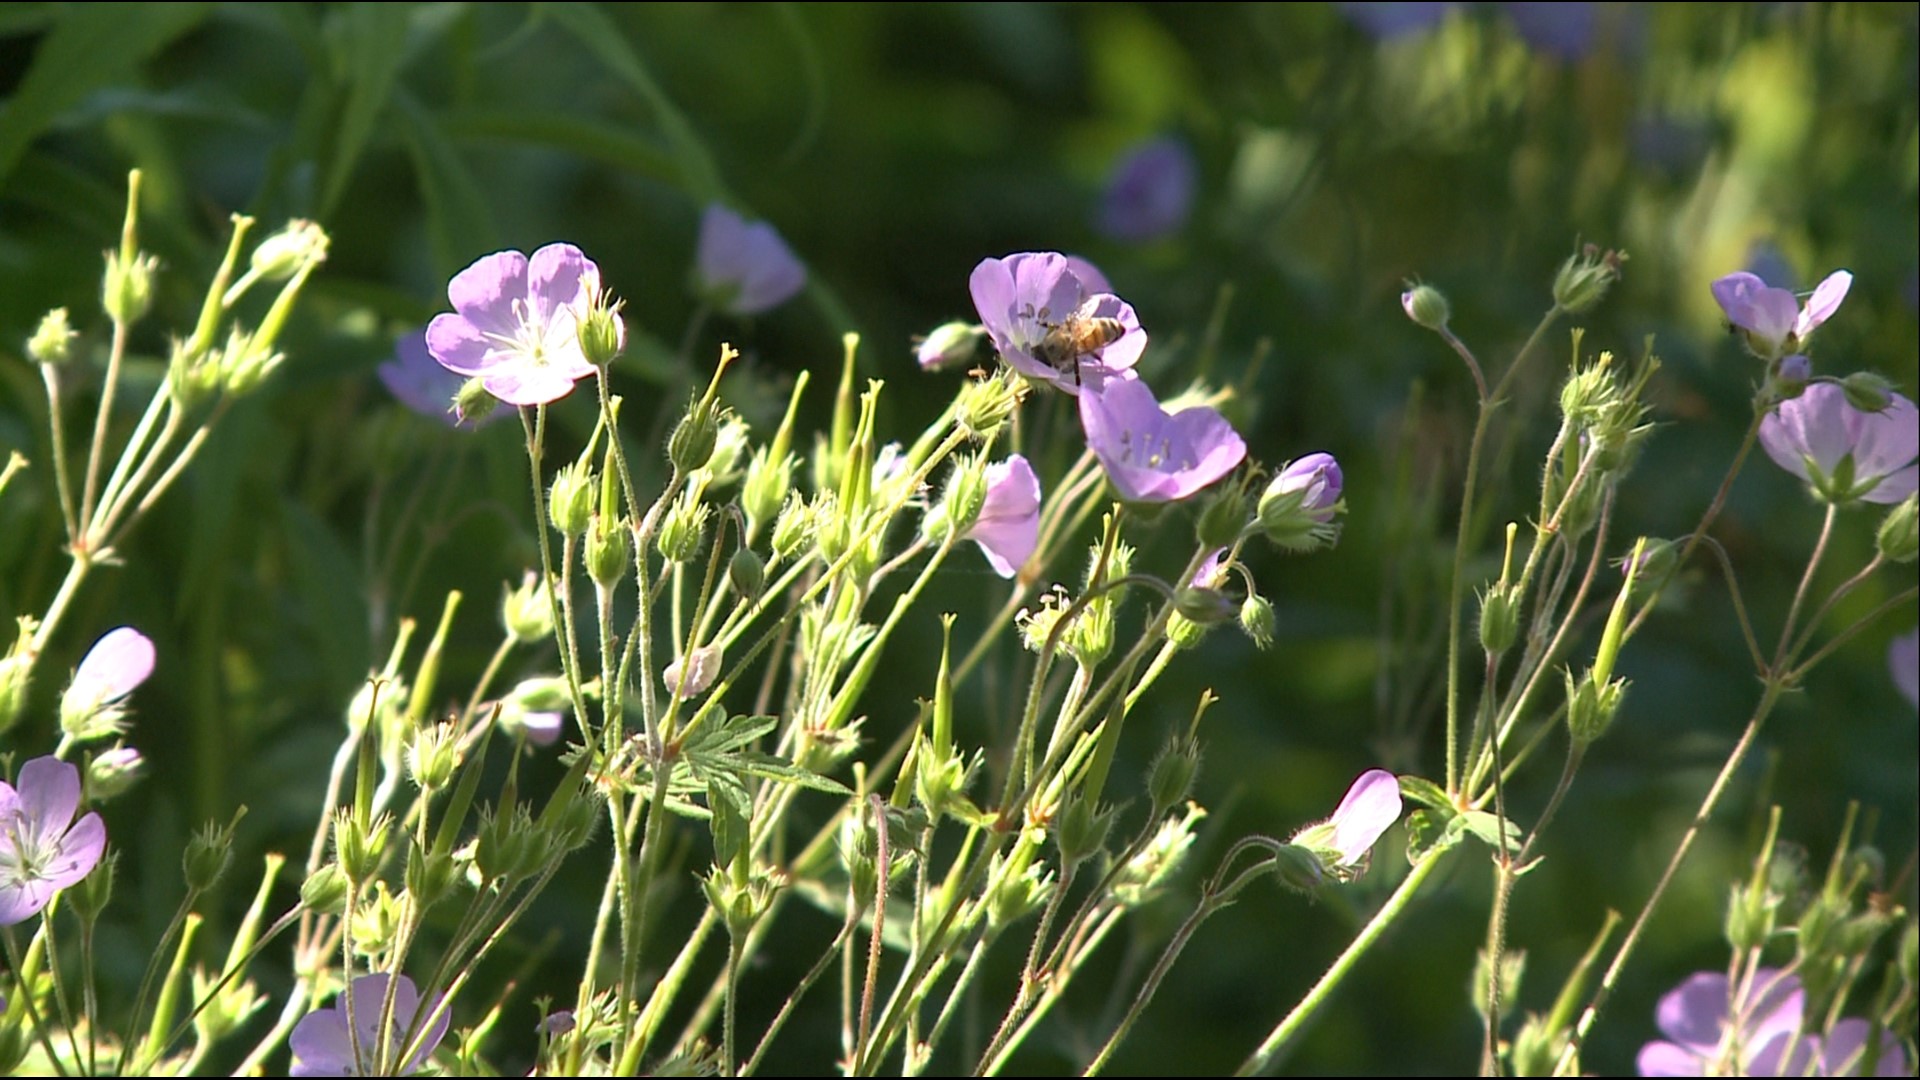 Maine Audubon promotes its "Bringing Nature Home" program to encourage growing native plants.